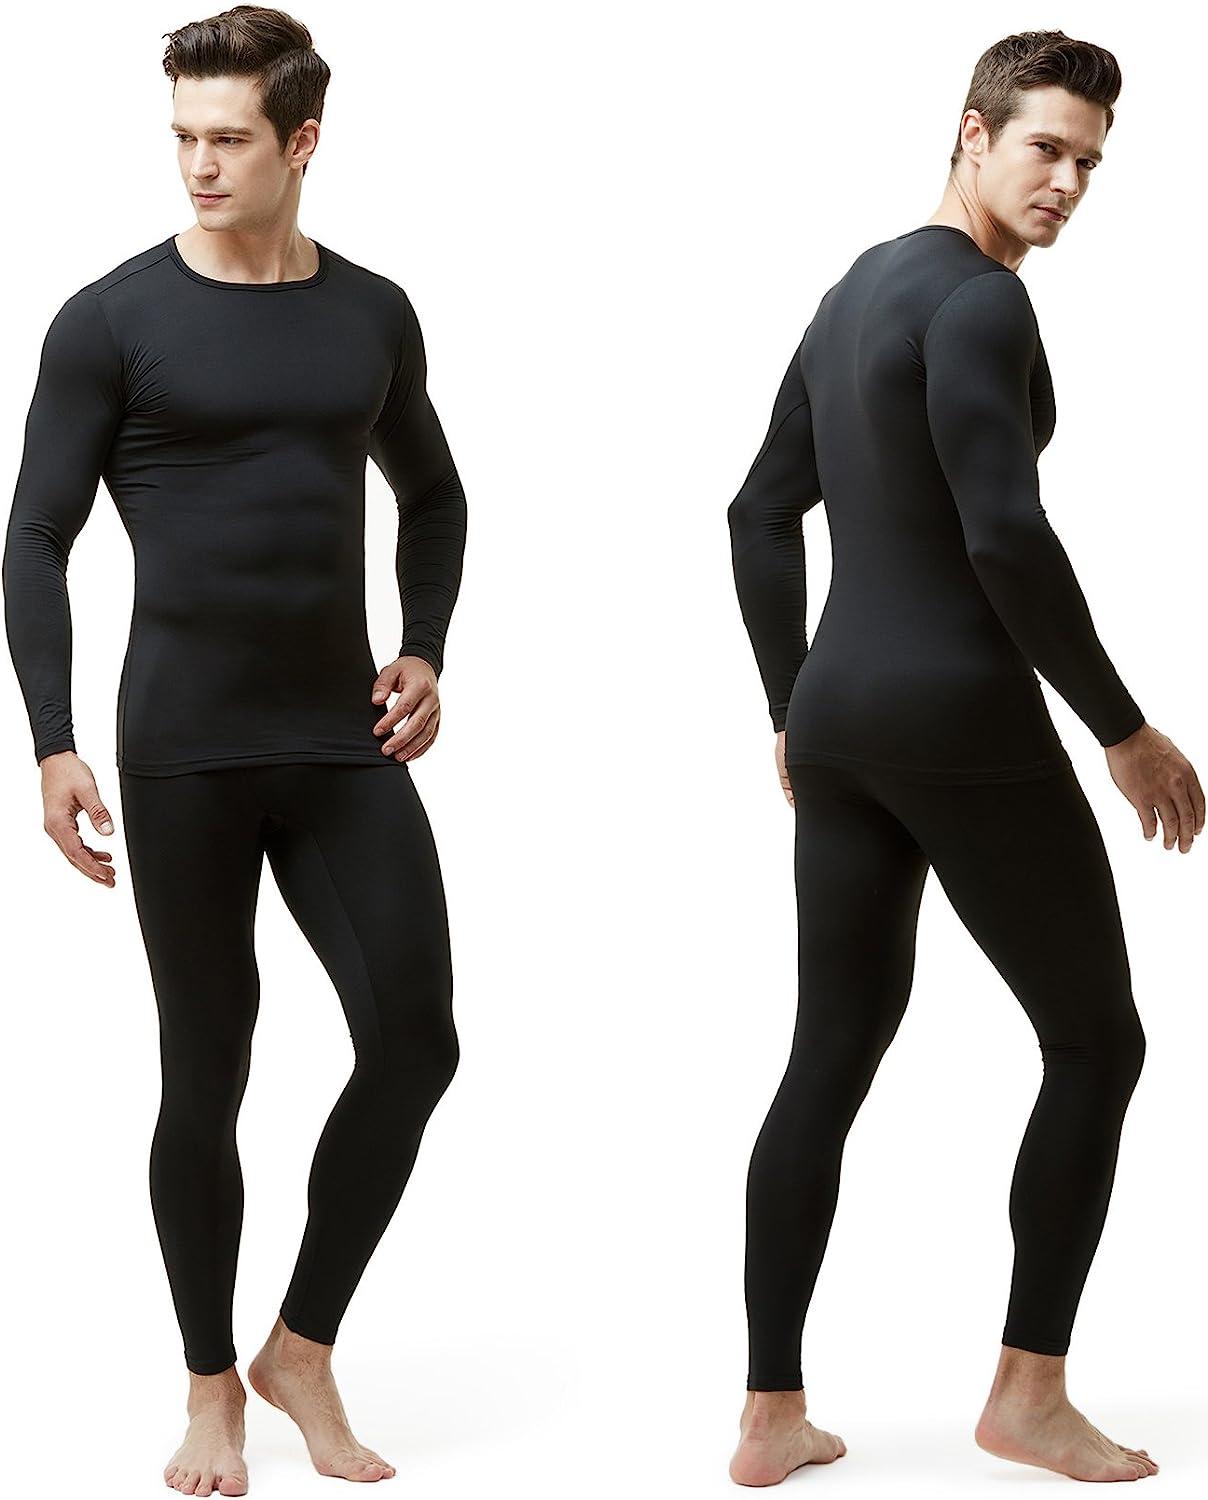 Men's Thermal Underwear Set, Microfiber Soft Fleece Lined Long